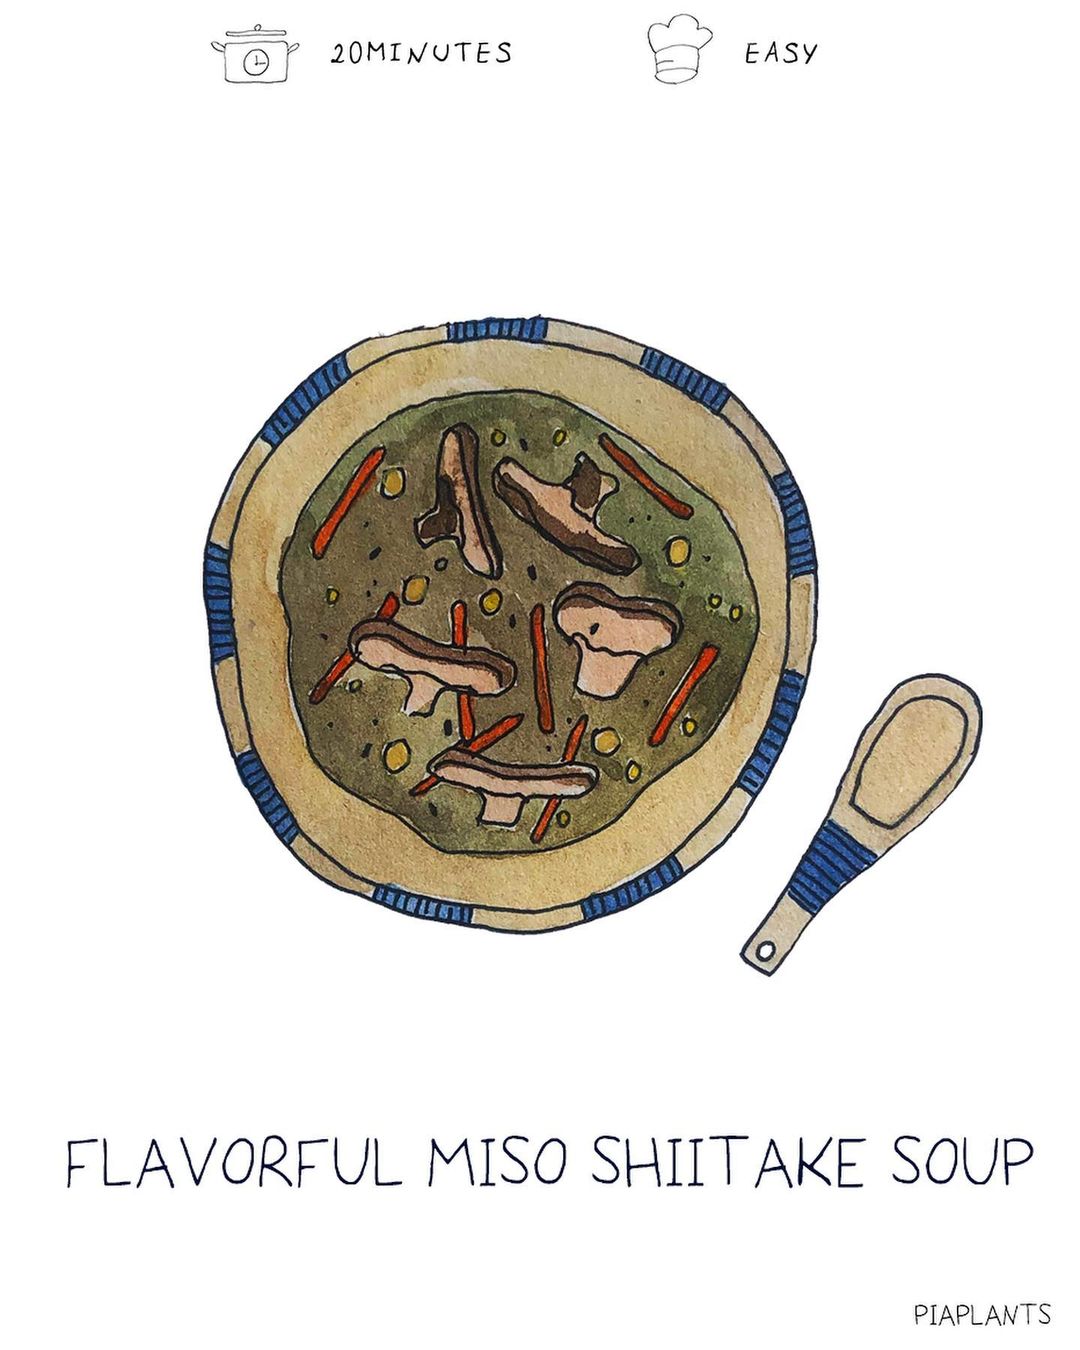 Miso shitake soup